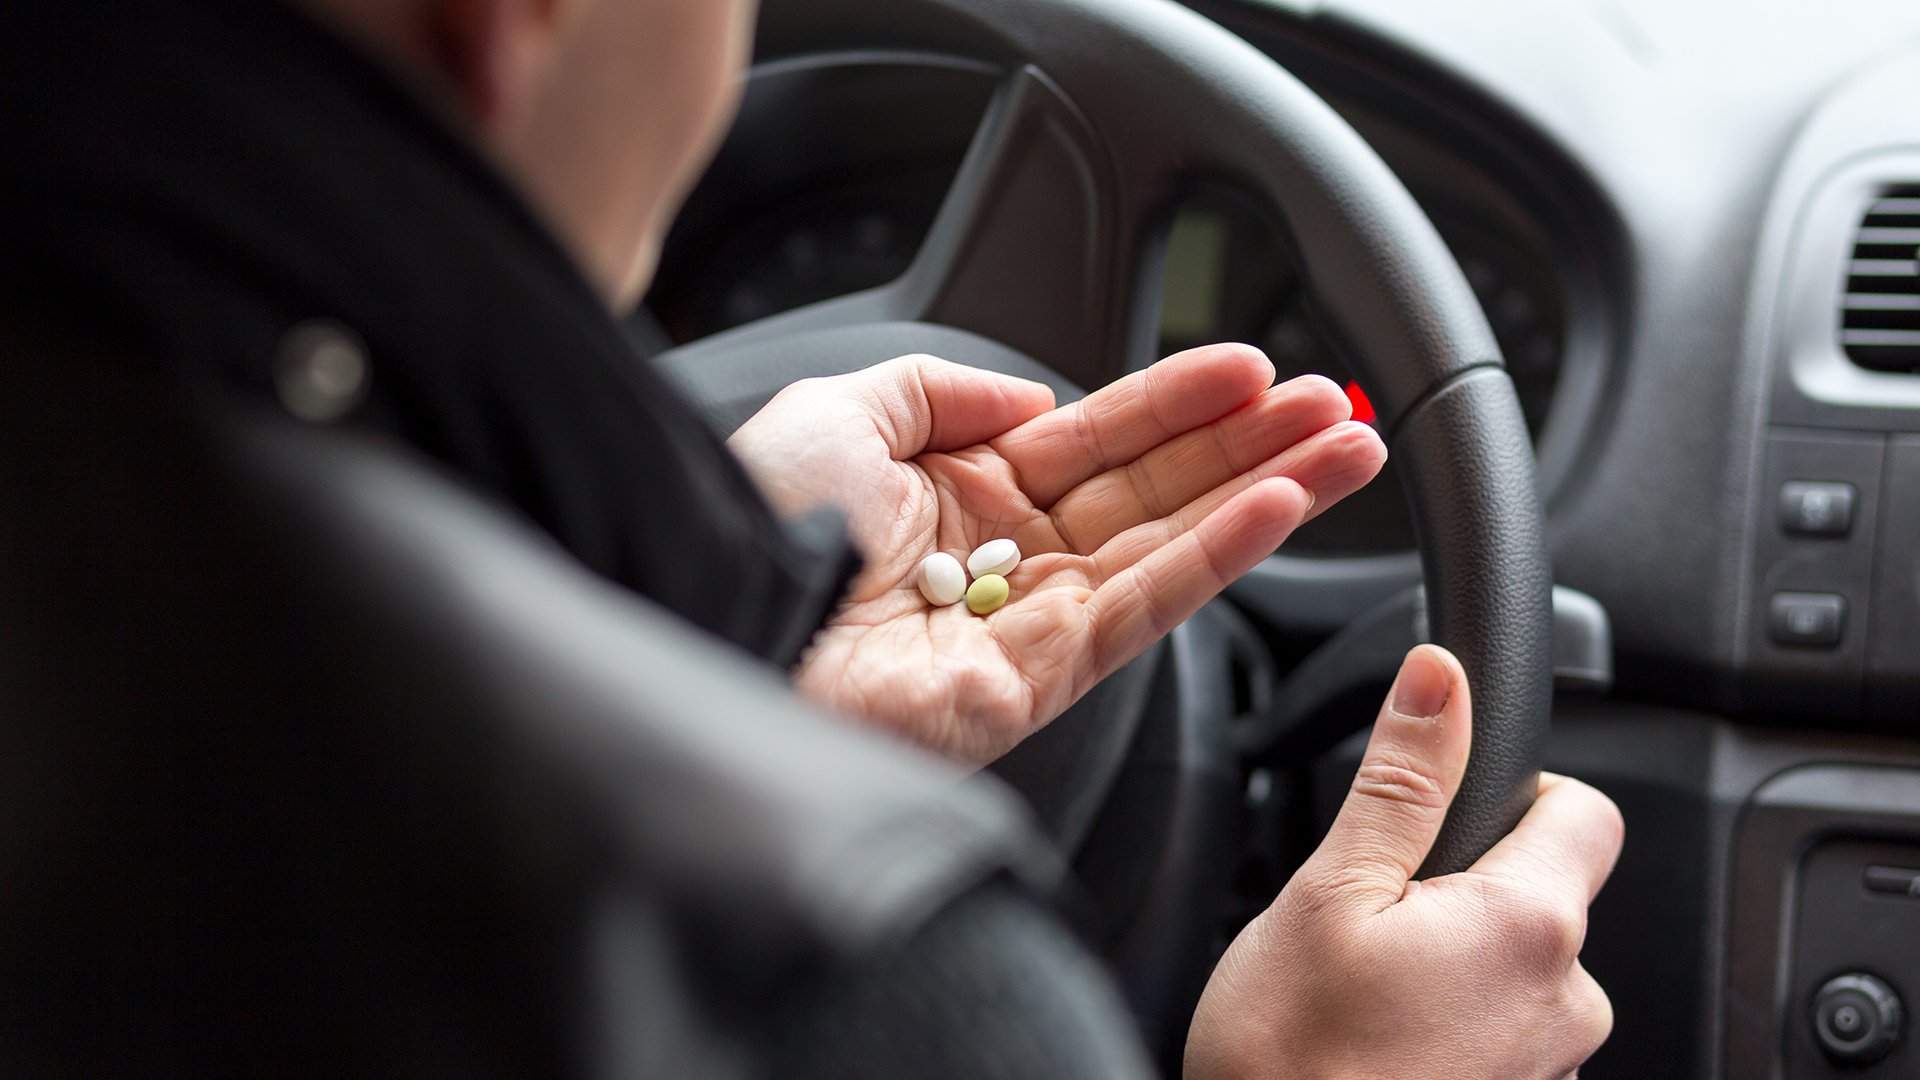 Микстуру можно: водителям разрешат принимать лекарства | Статьи | Известия